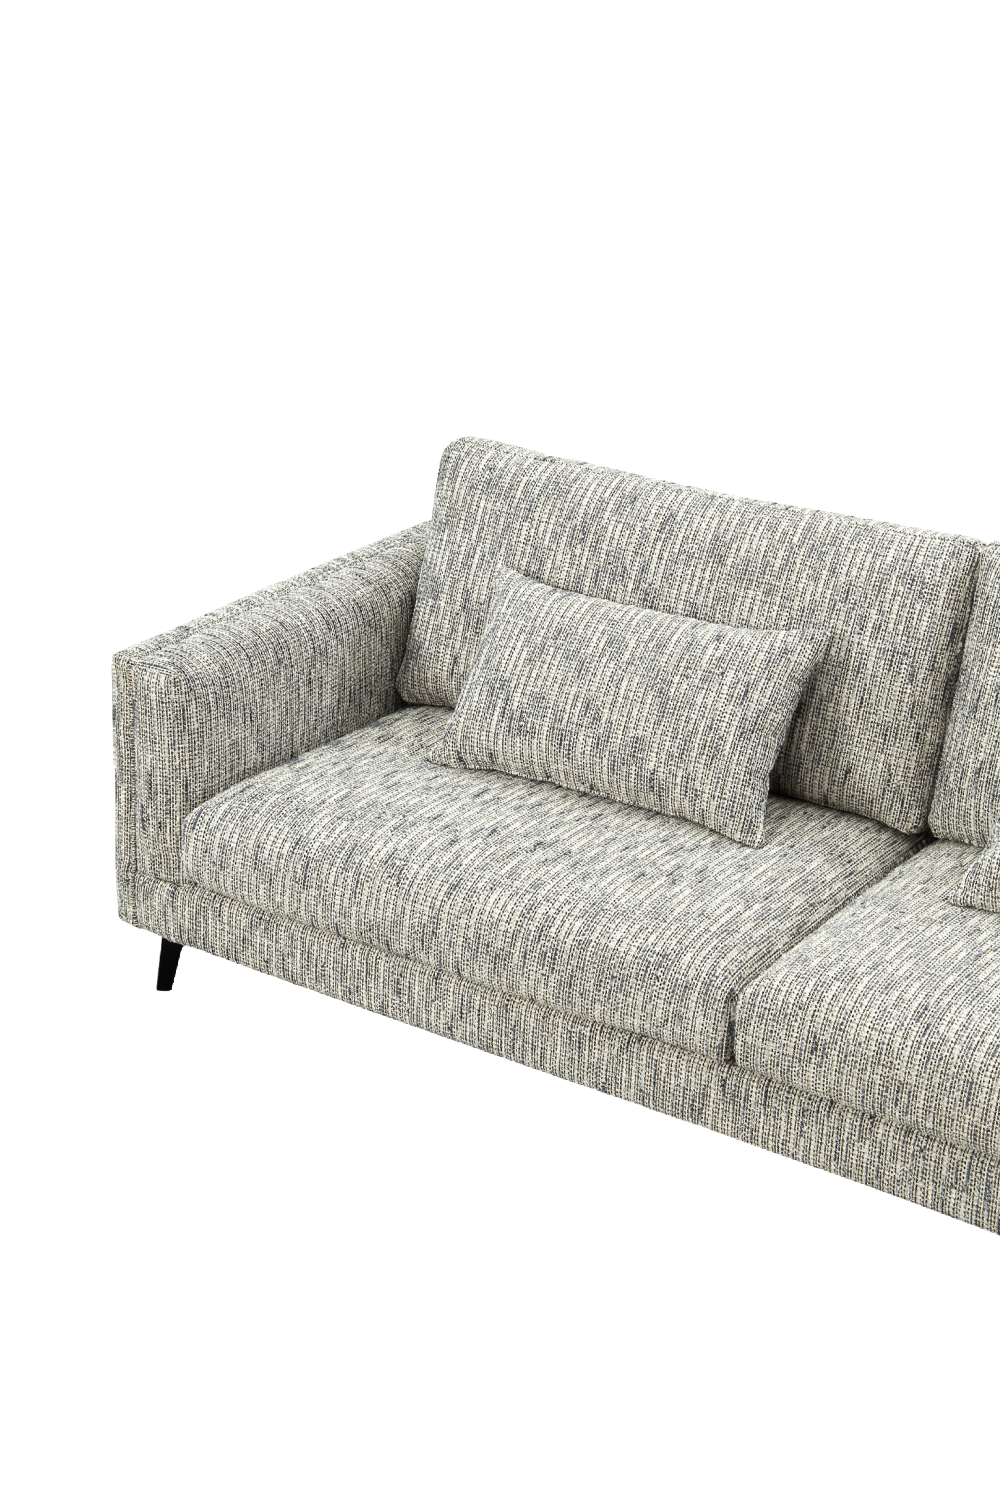 Upholstered Contemporary Sofa | Liang & Eimil Bennett | Oroa.com